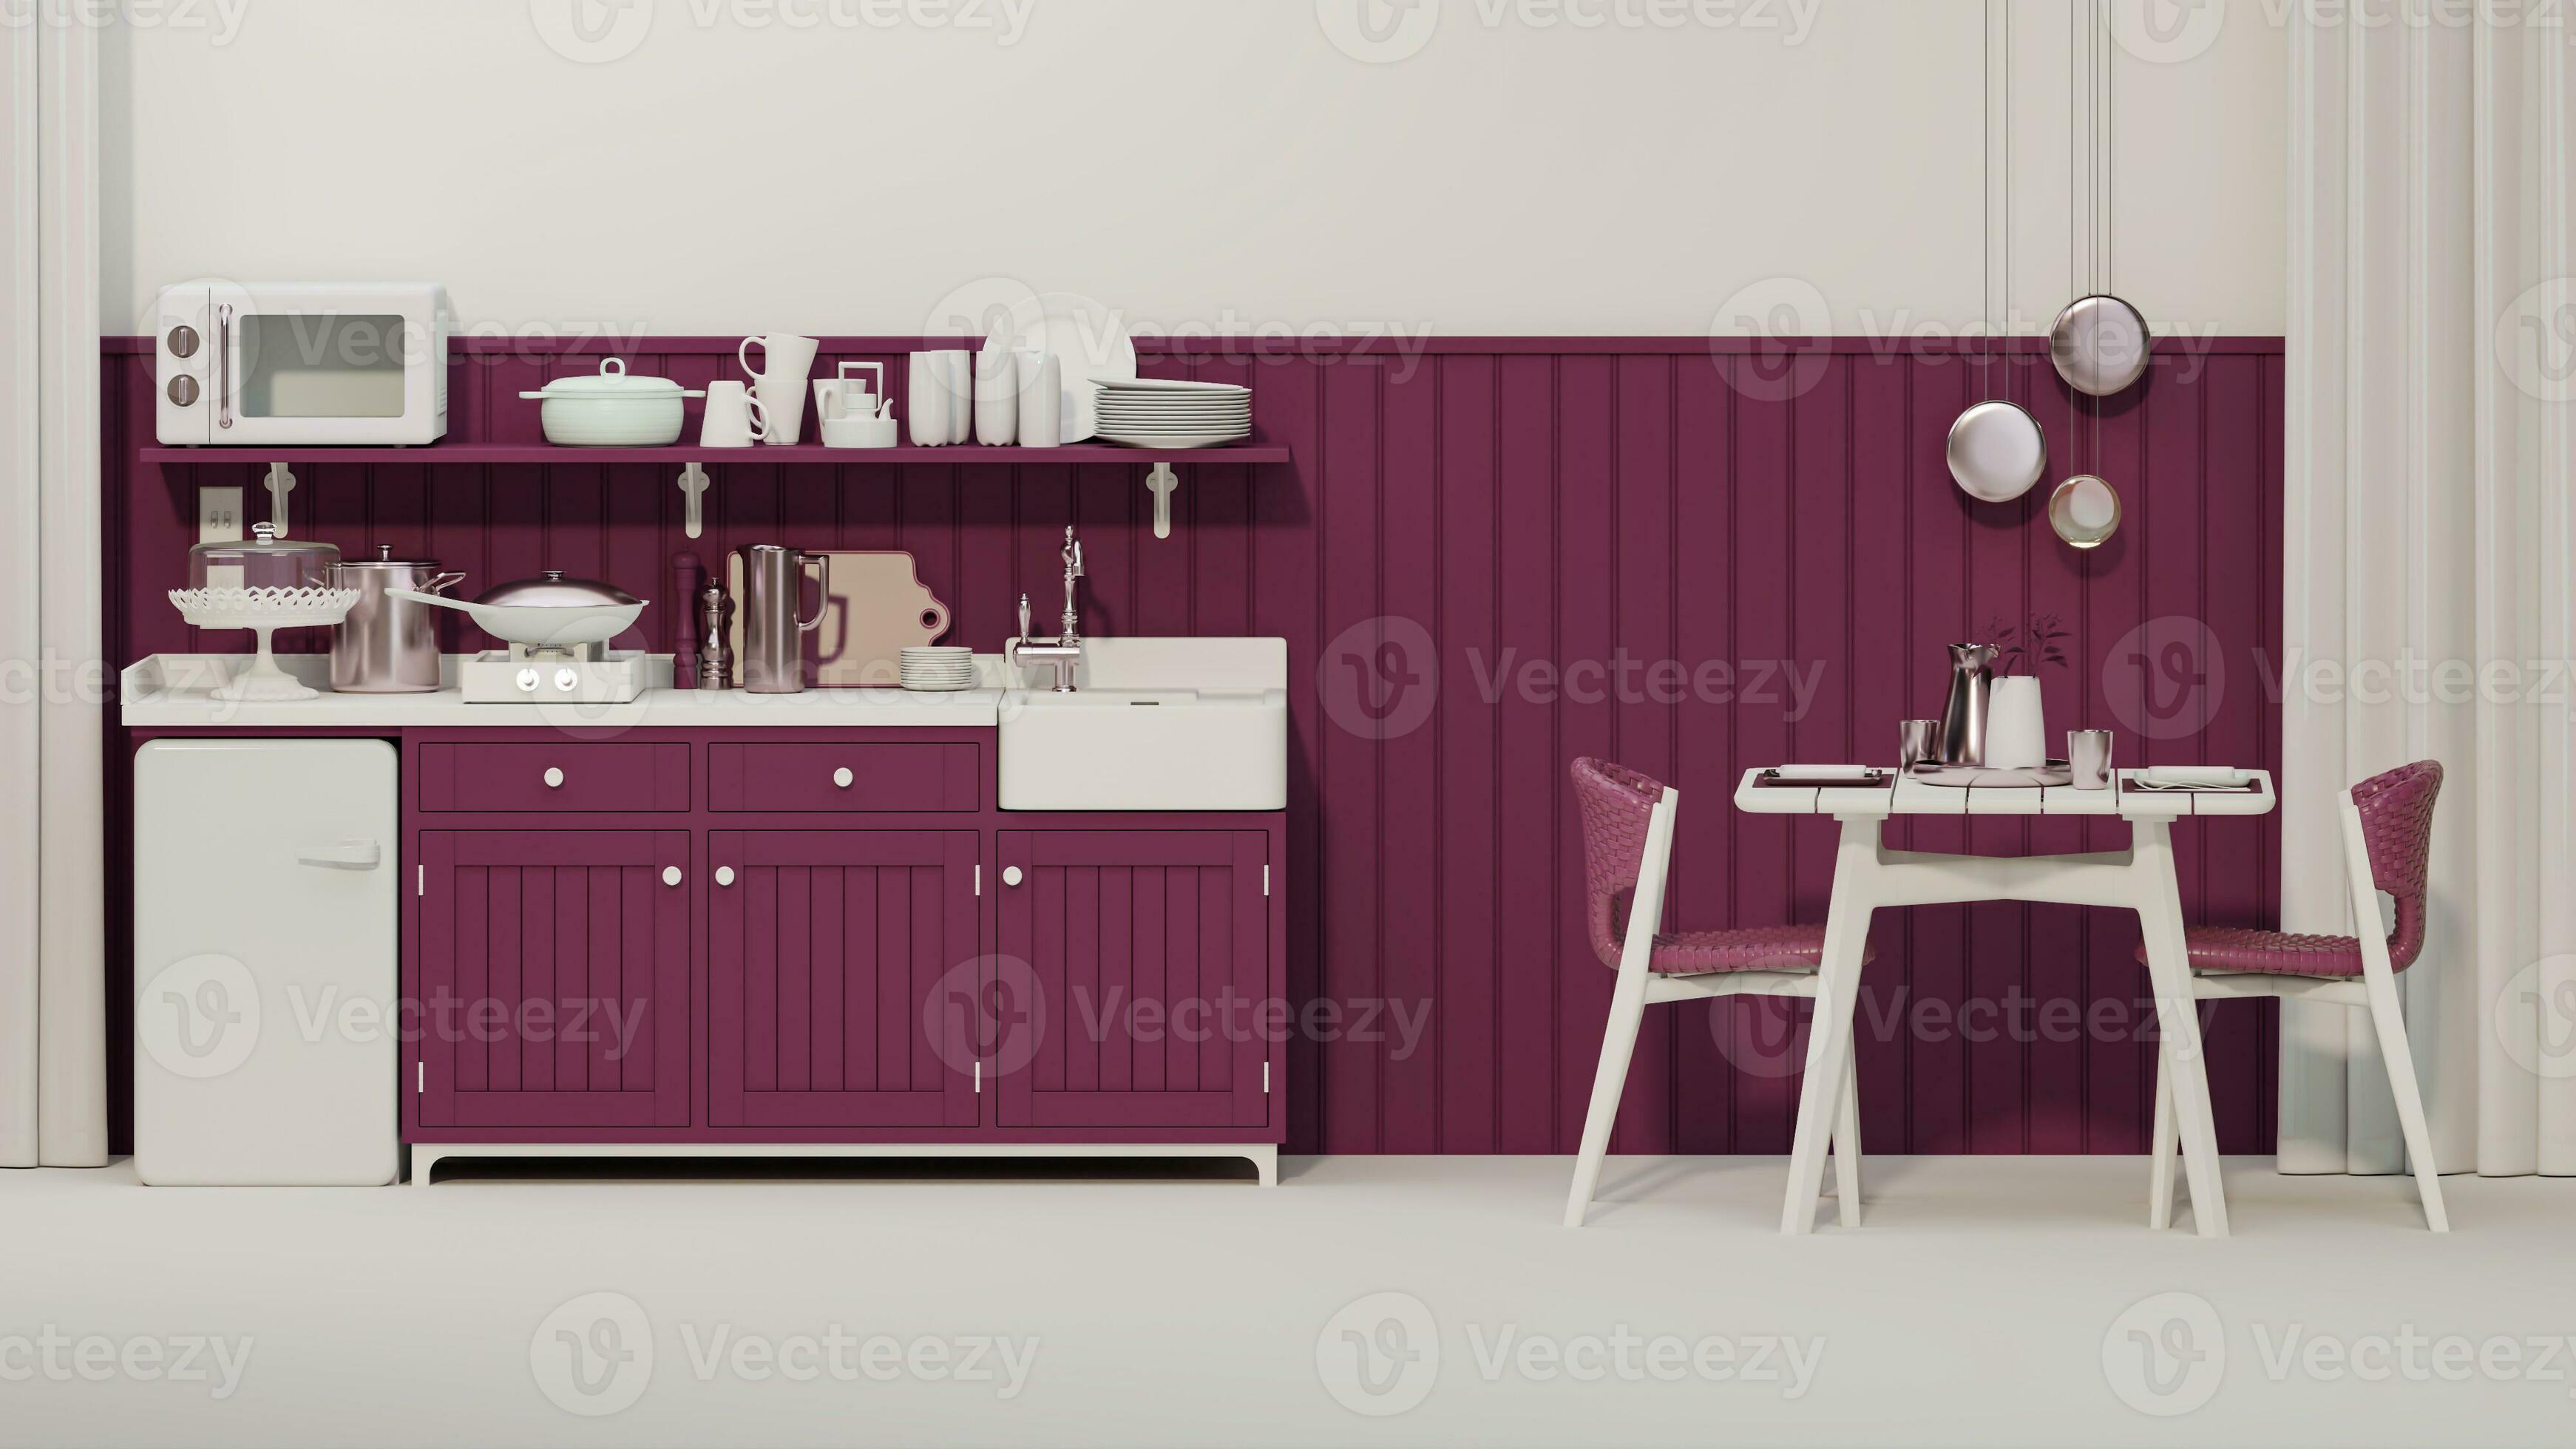 Paneles de pared viva magenta con estante de madera en una cocina moderna